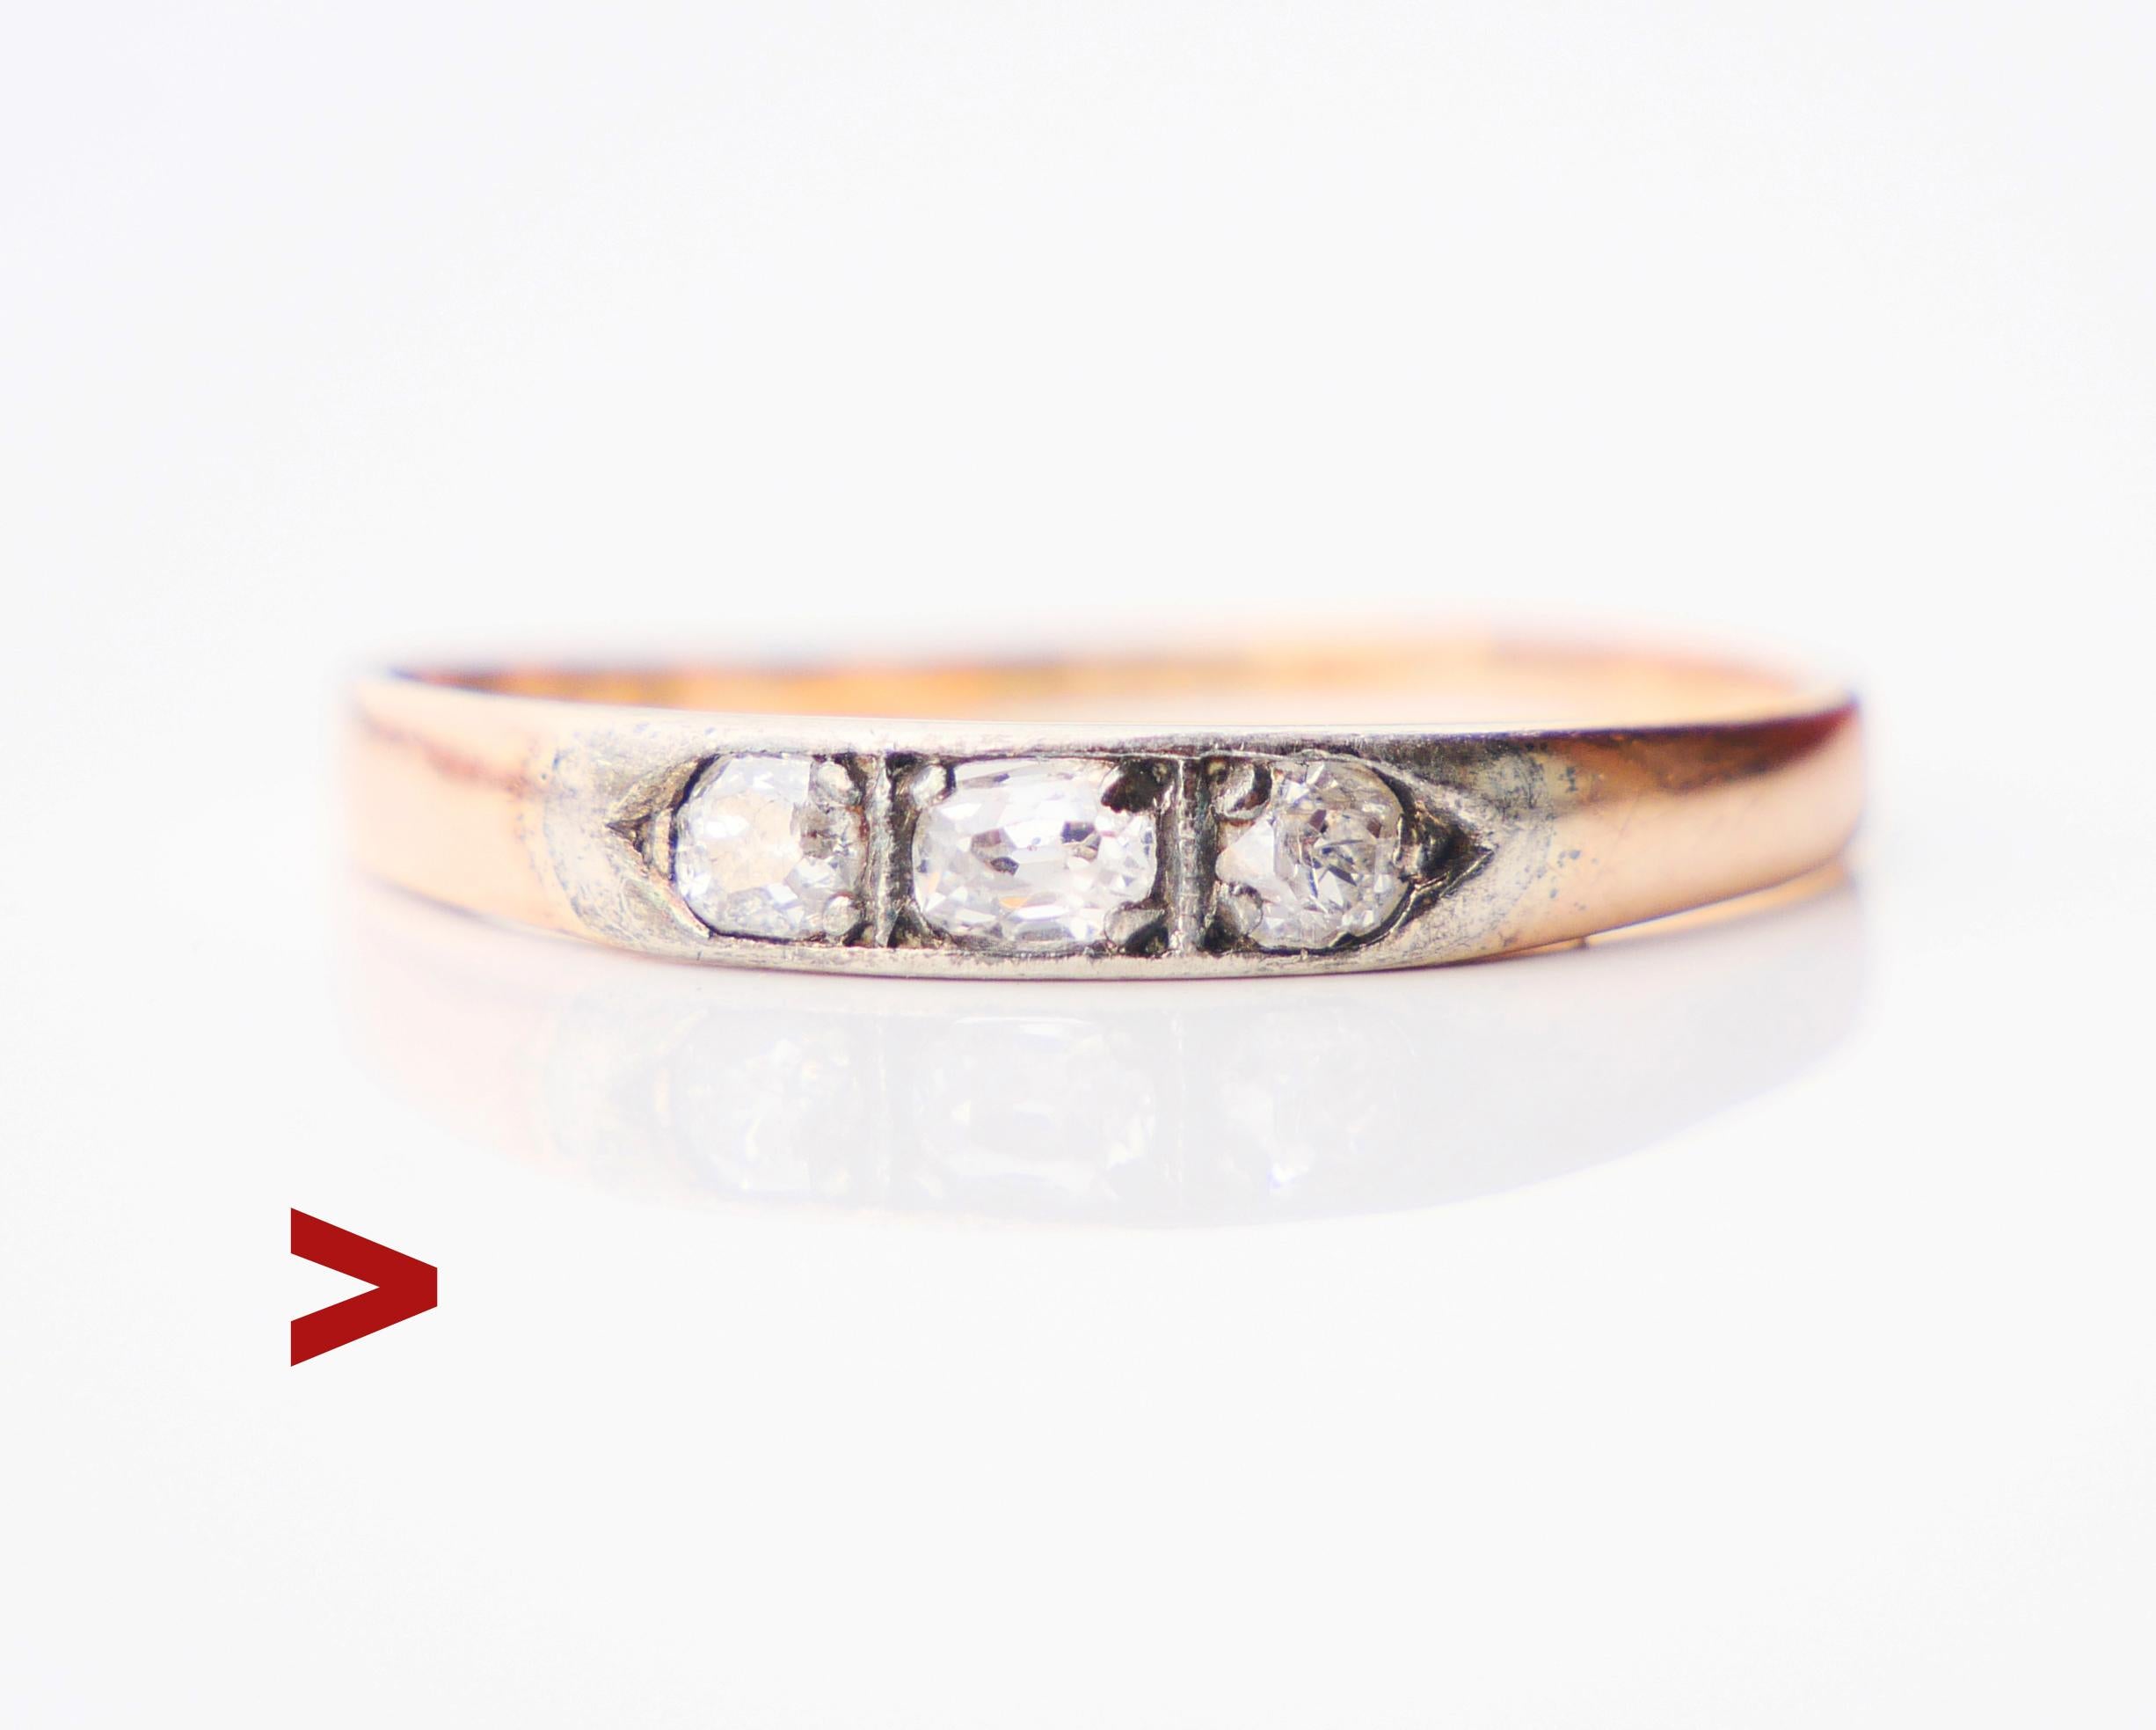 Old Finish Ring mit 3 alten europäischen geschliffenen Diamanten, Band in massivem 14K Rose Gold mit Weißgold / oder Silber-Cluster.

Finish Punzierungen, 585, Hersteller. Datums-Kombination N6 / erstellt im Jahr 1942.

Größter zentraler Diamant im